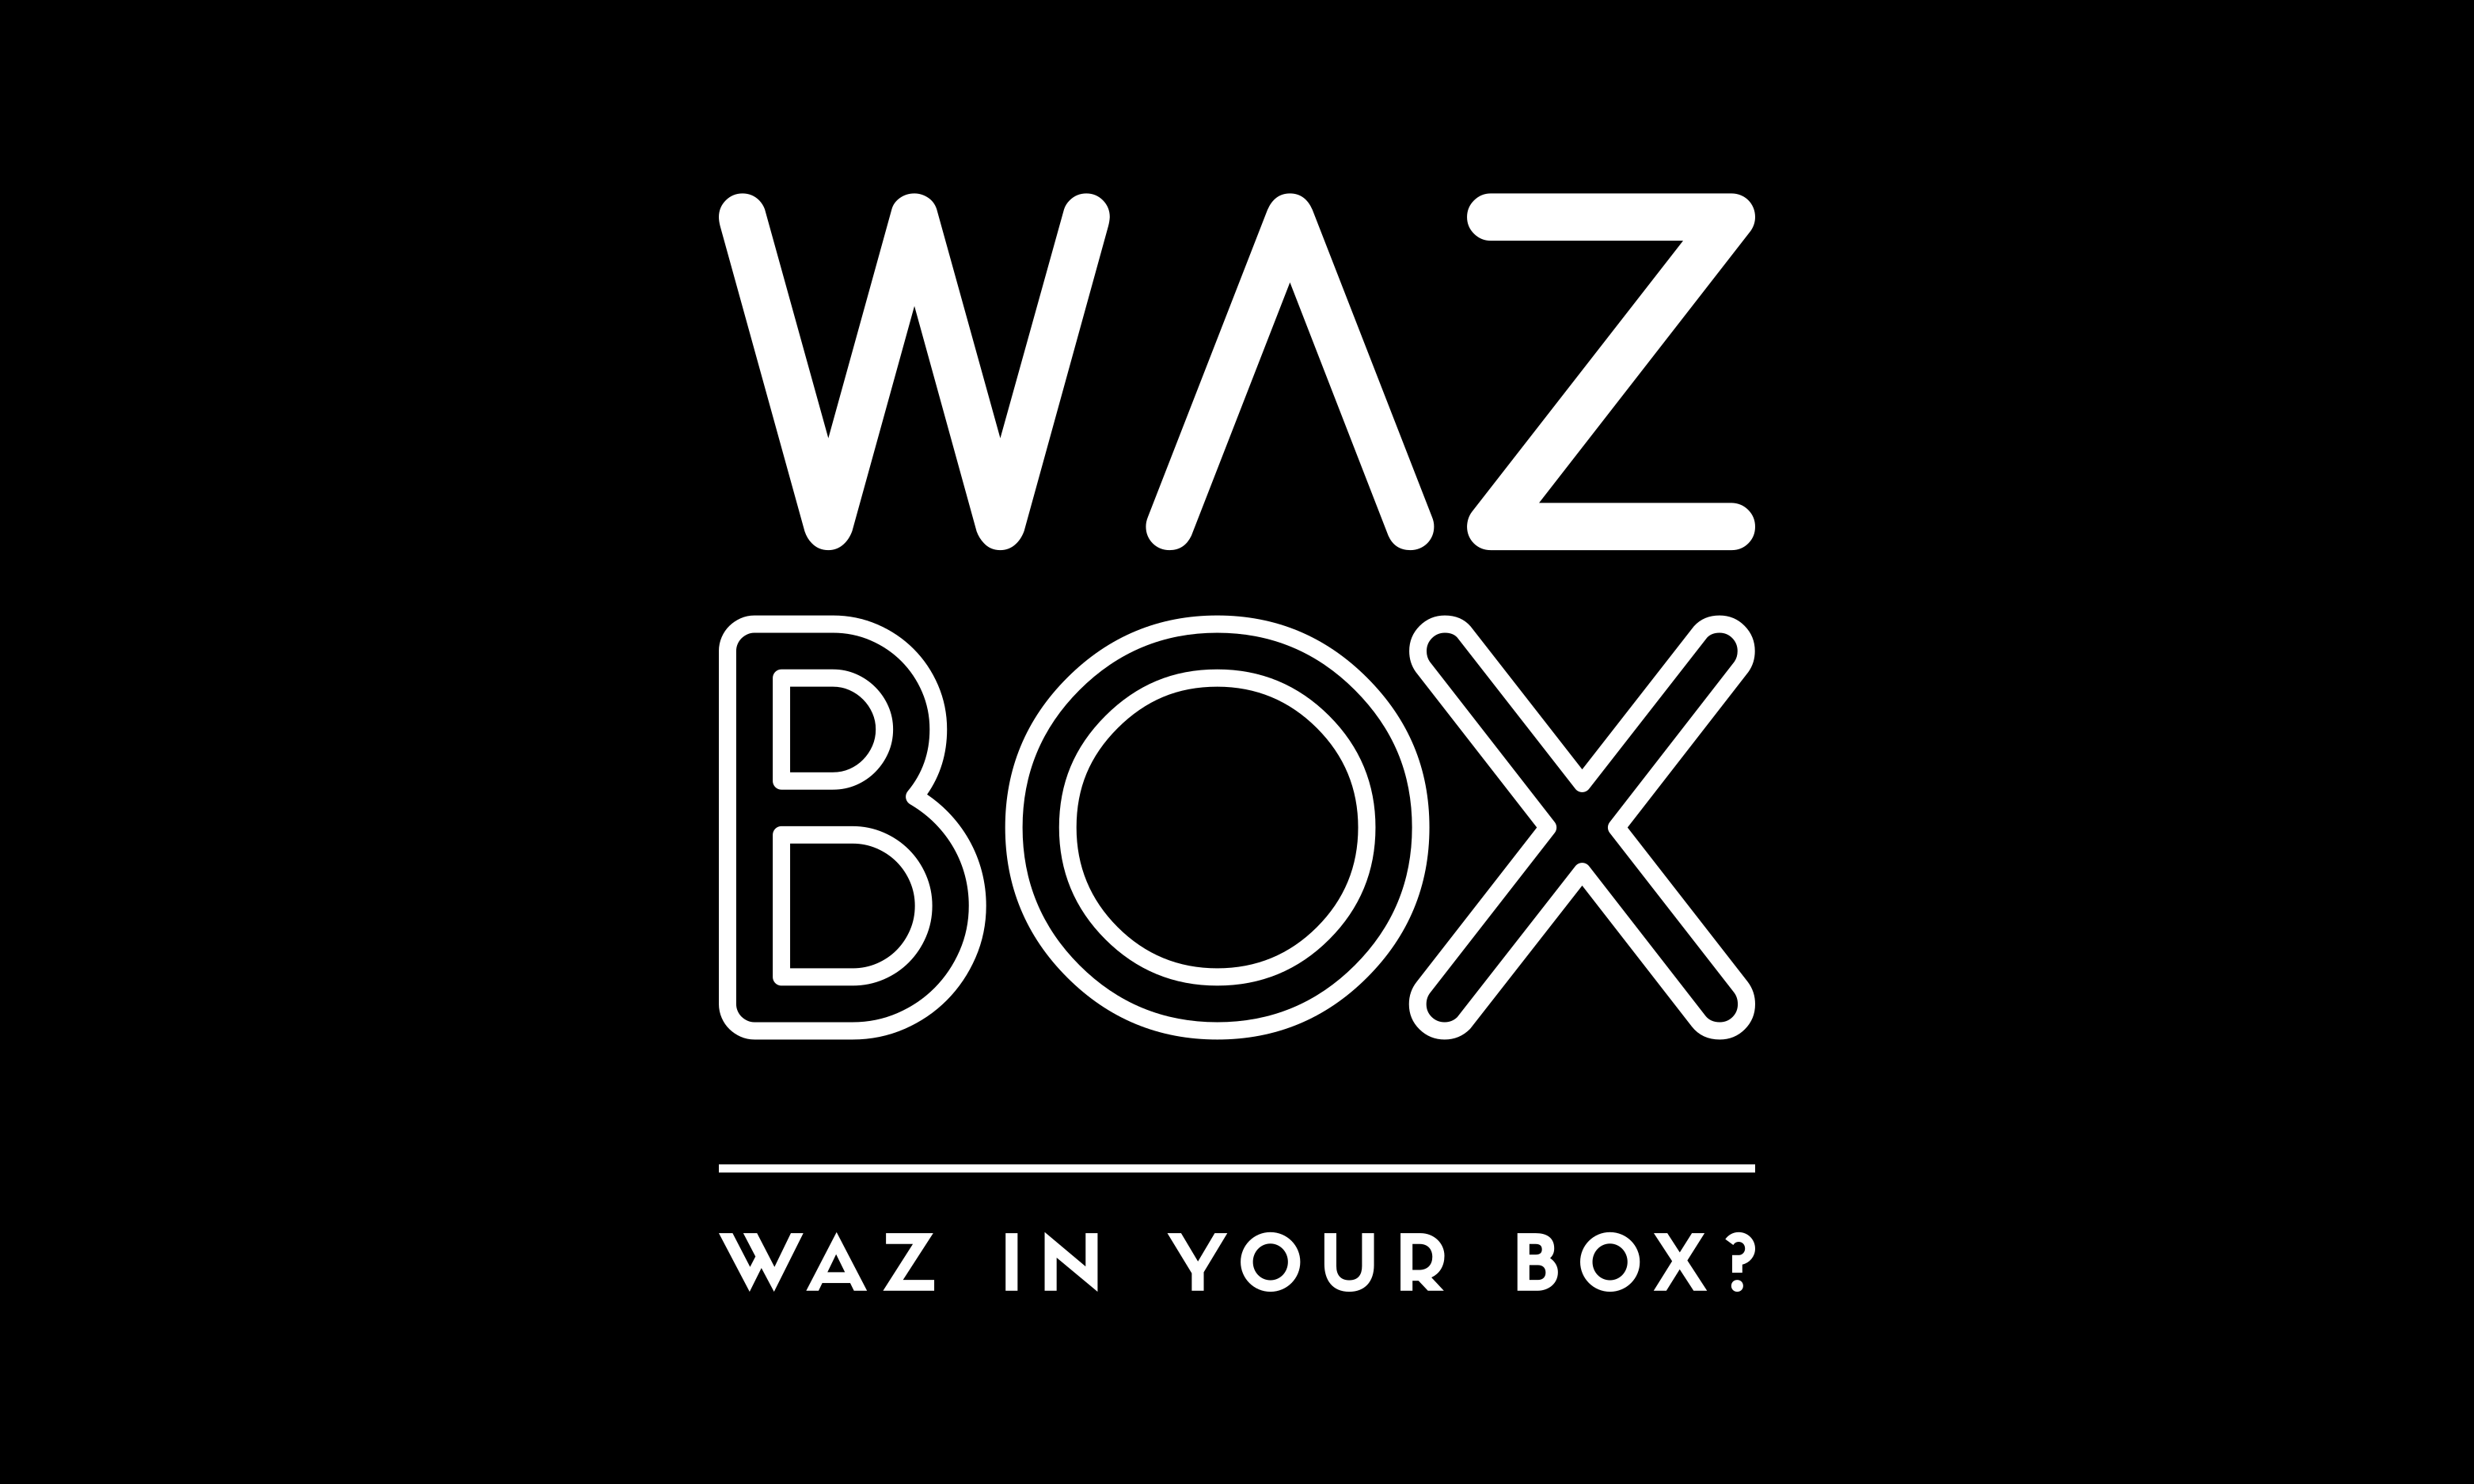 Waz Box